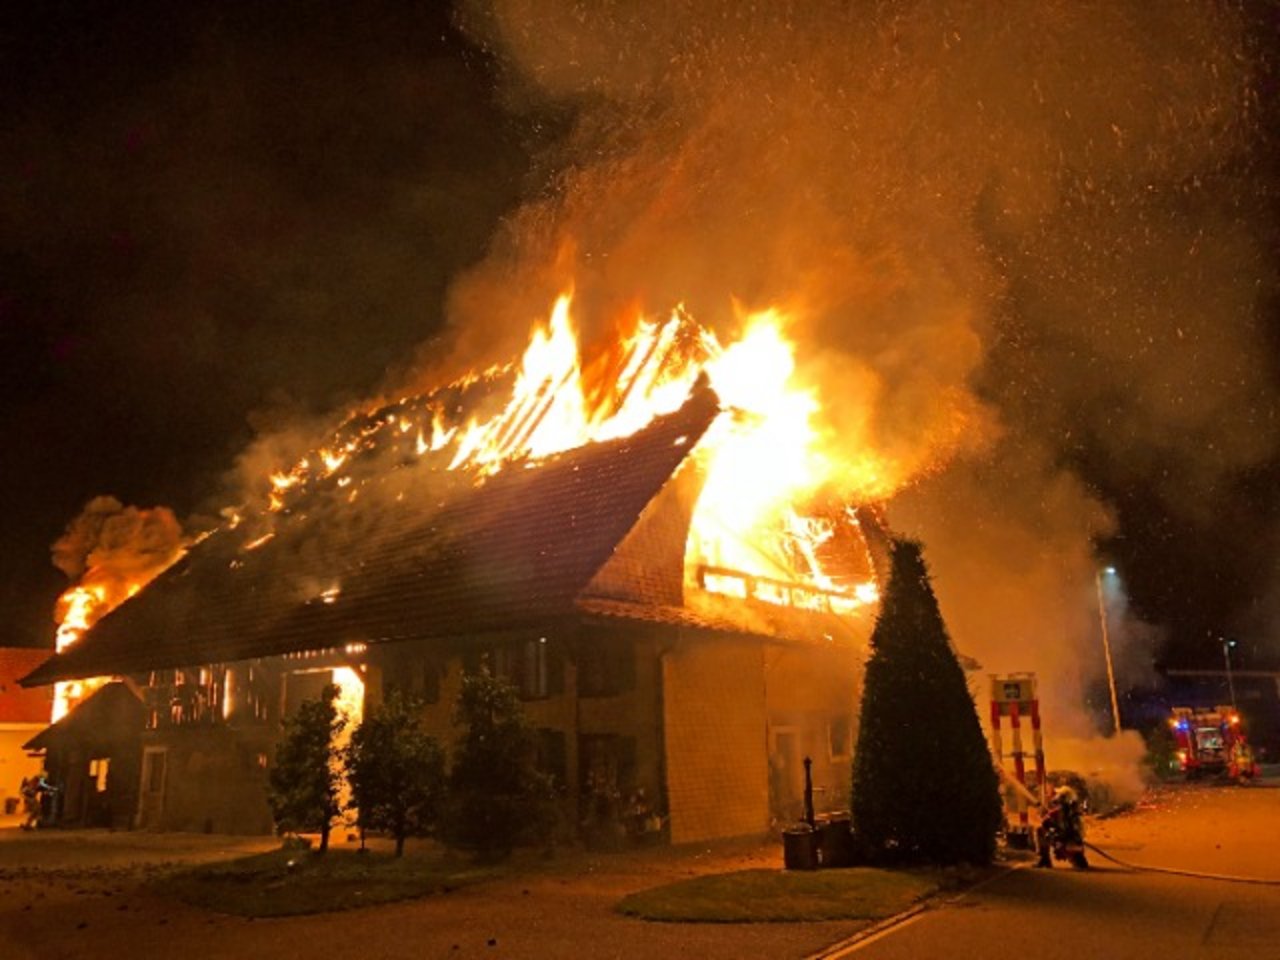 Das Bauernhaus stand bereits voll im Brand, als die umgehend ausgerückten Einsatzkräfte vor Ort eintrafen. (Bild Kapo BE)